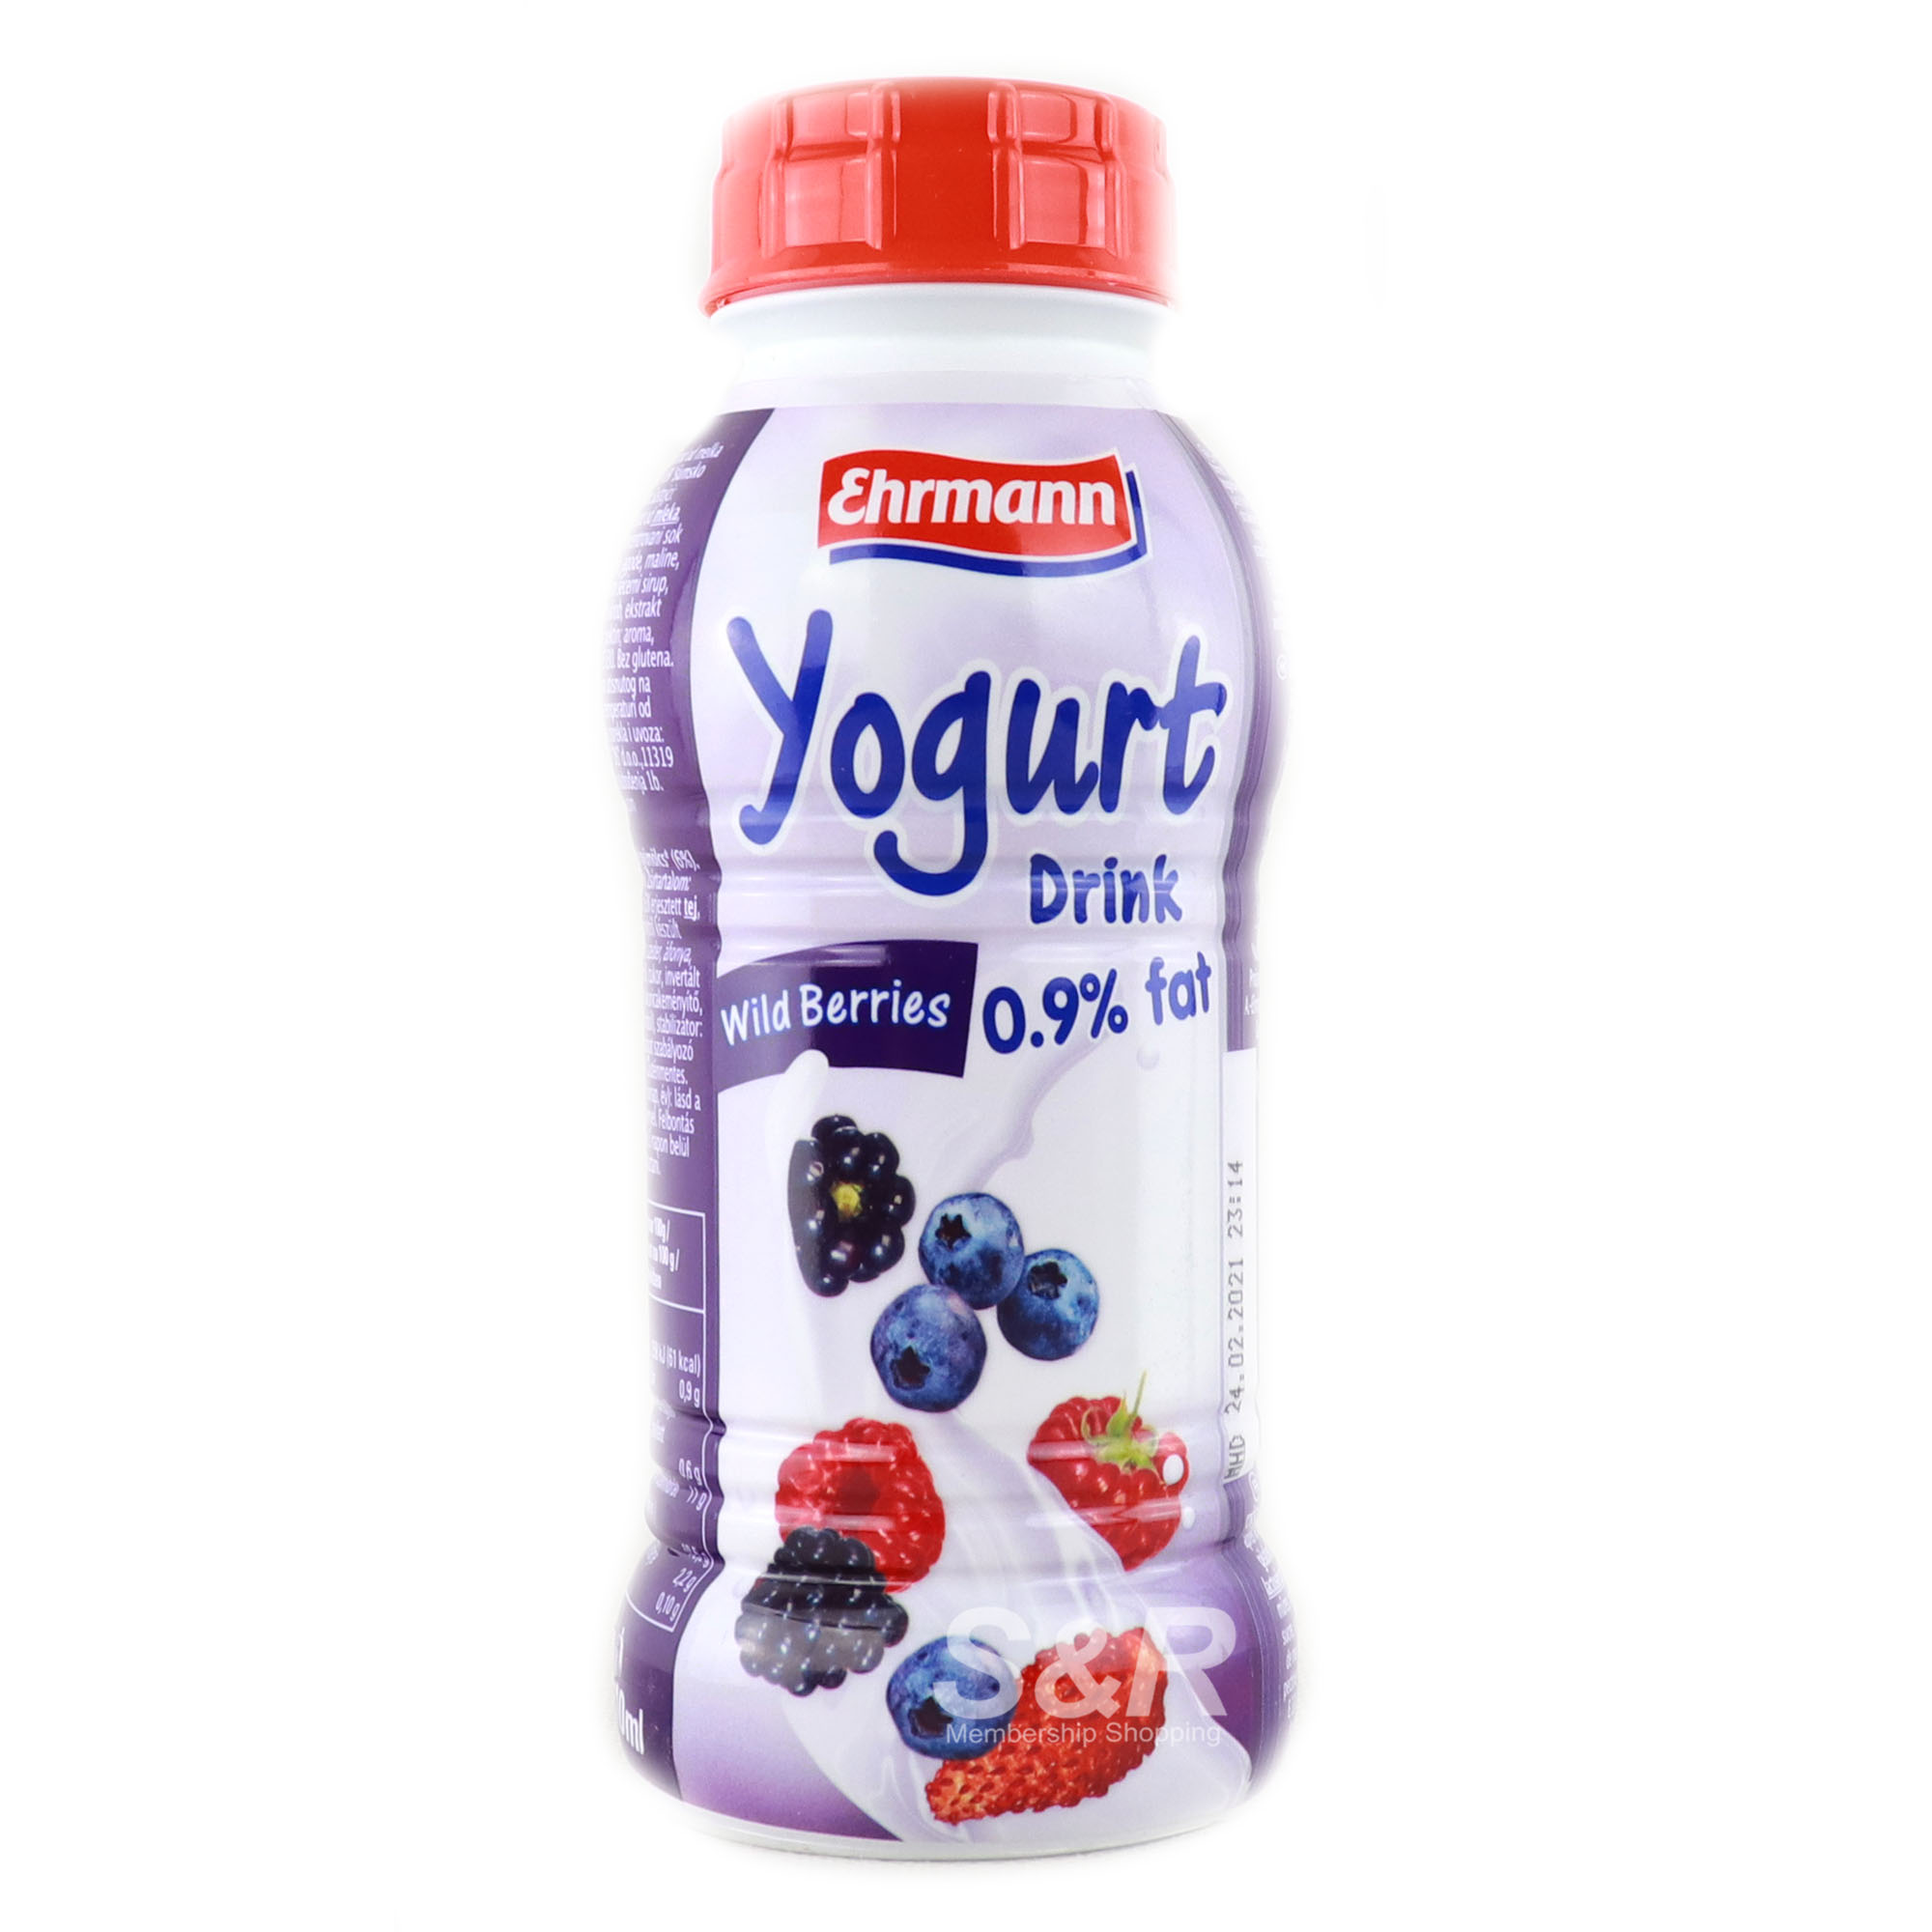 Ehrmann Yogurt Drink Wild Berries Flavor 330mL